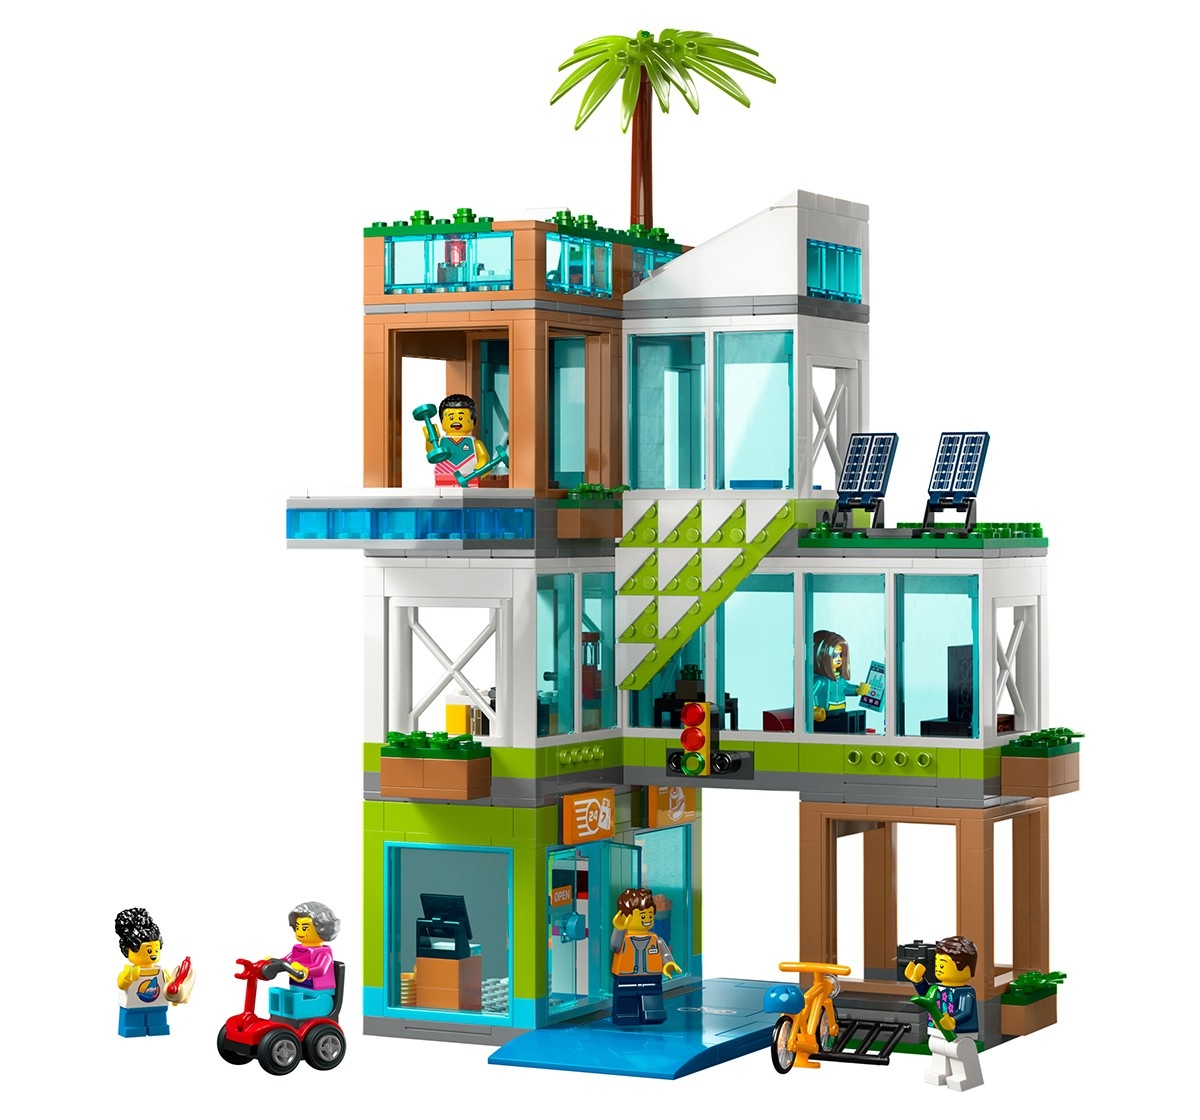 Lego City Apartment Building 60365 Building Toy Set (688 Pieces), 6Y+